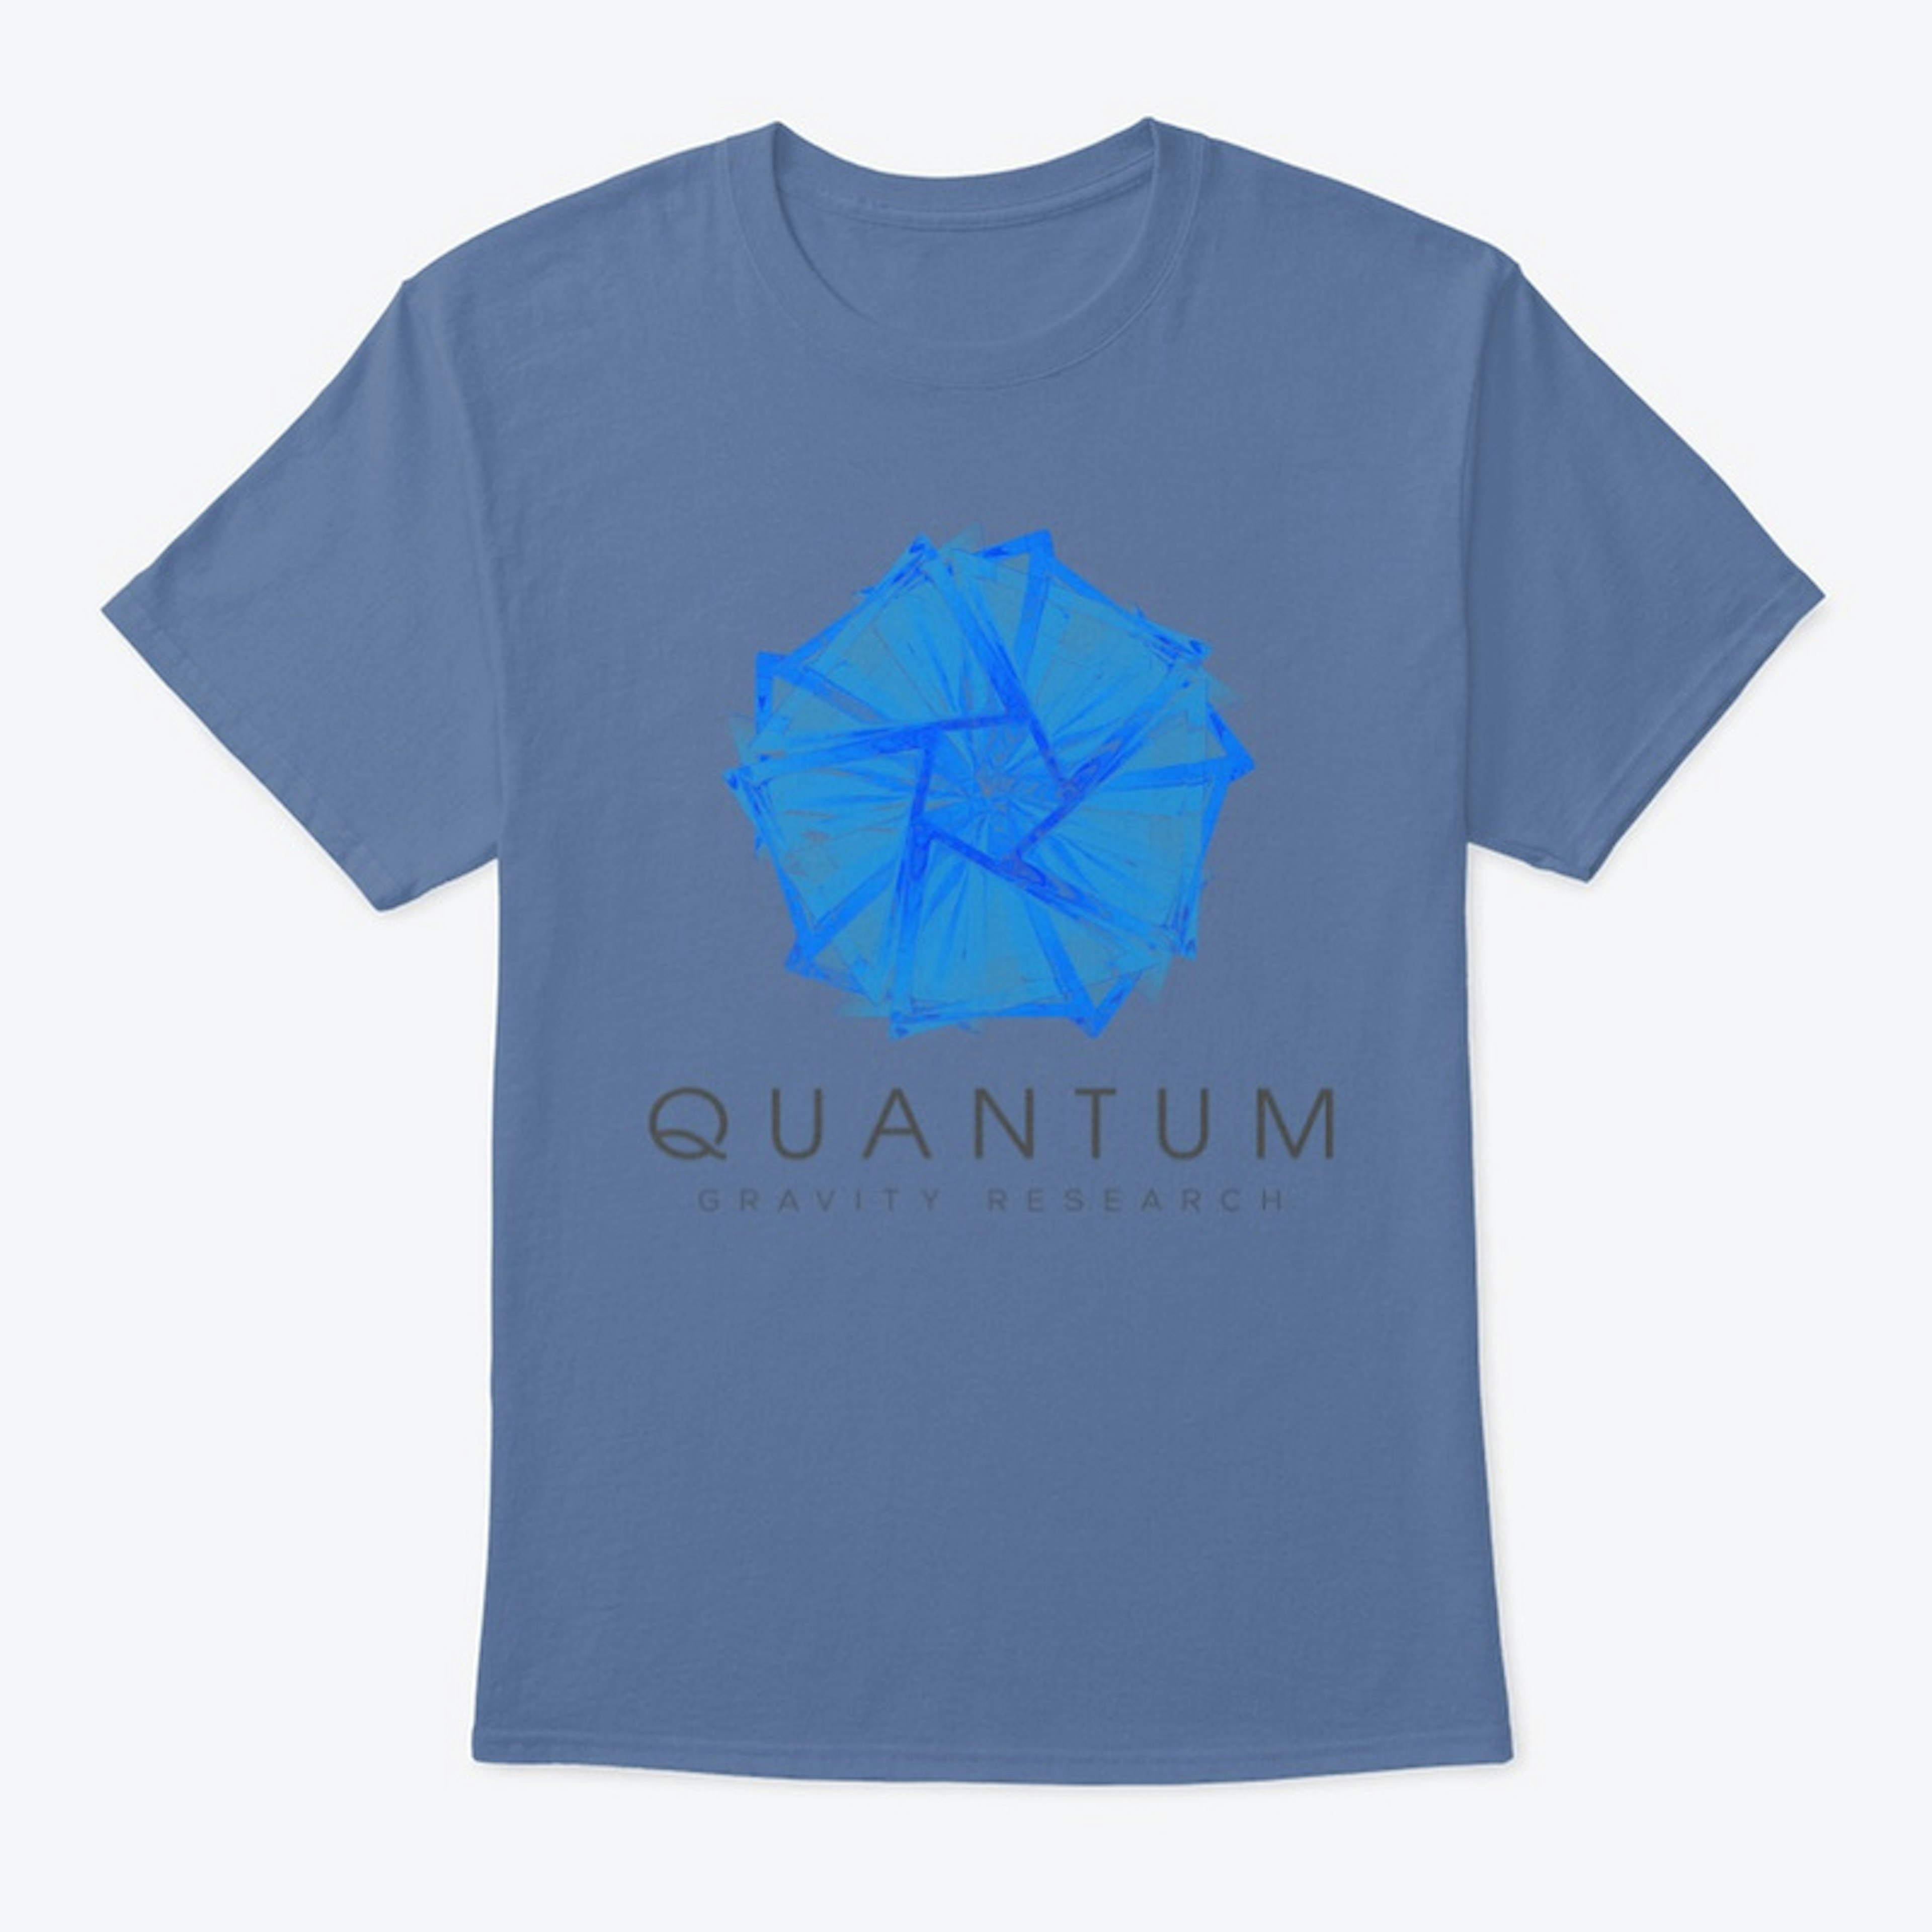 Quantum Gravity Research Gear 